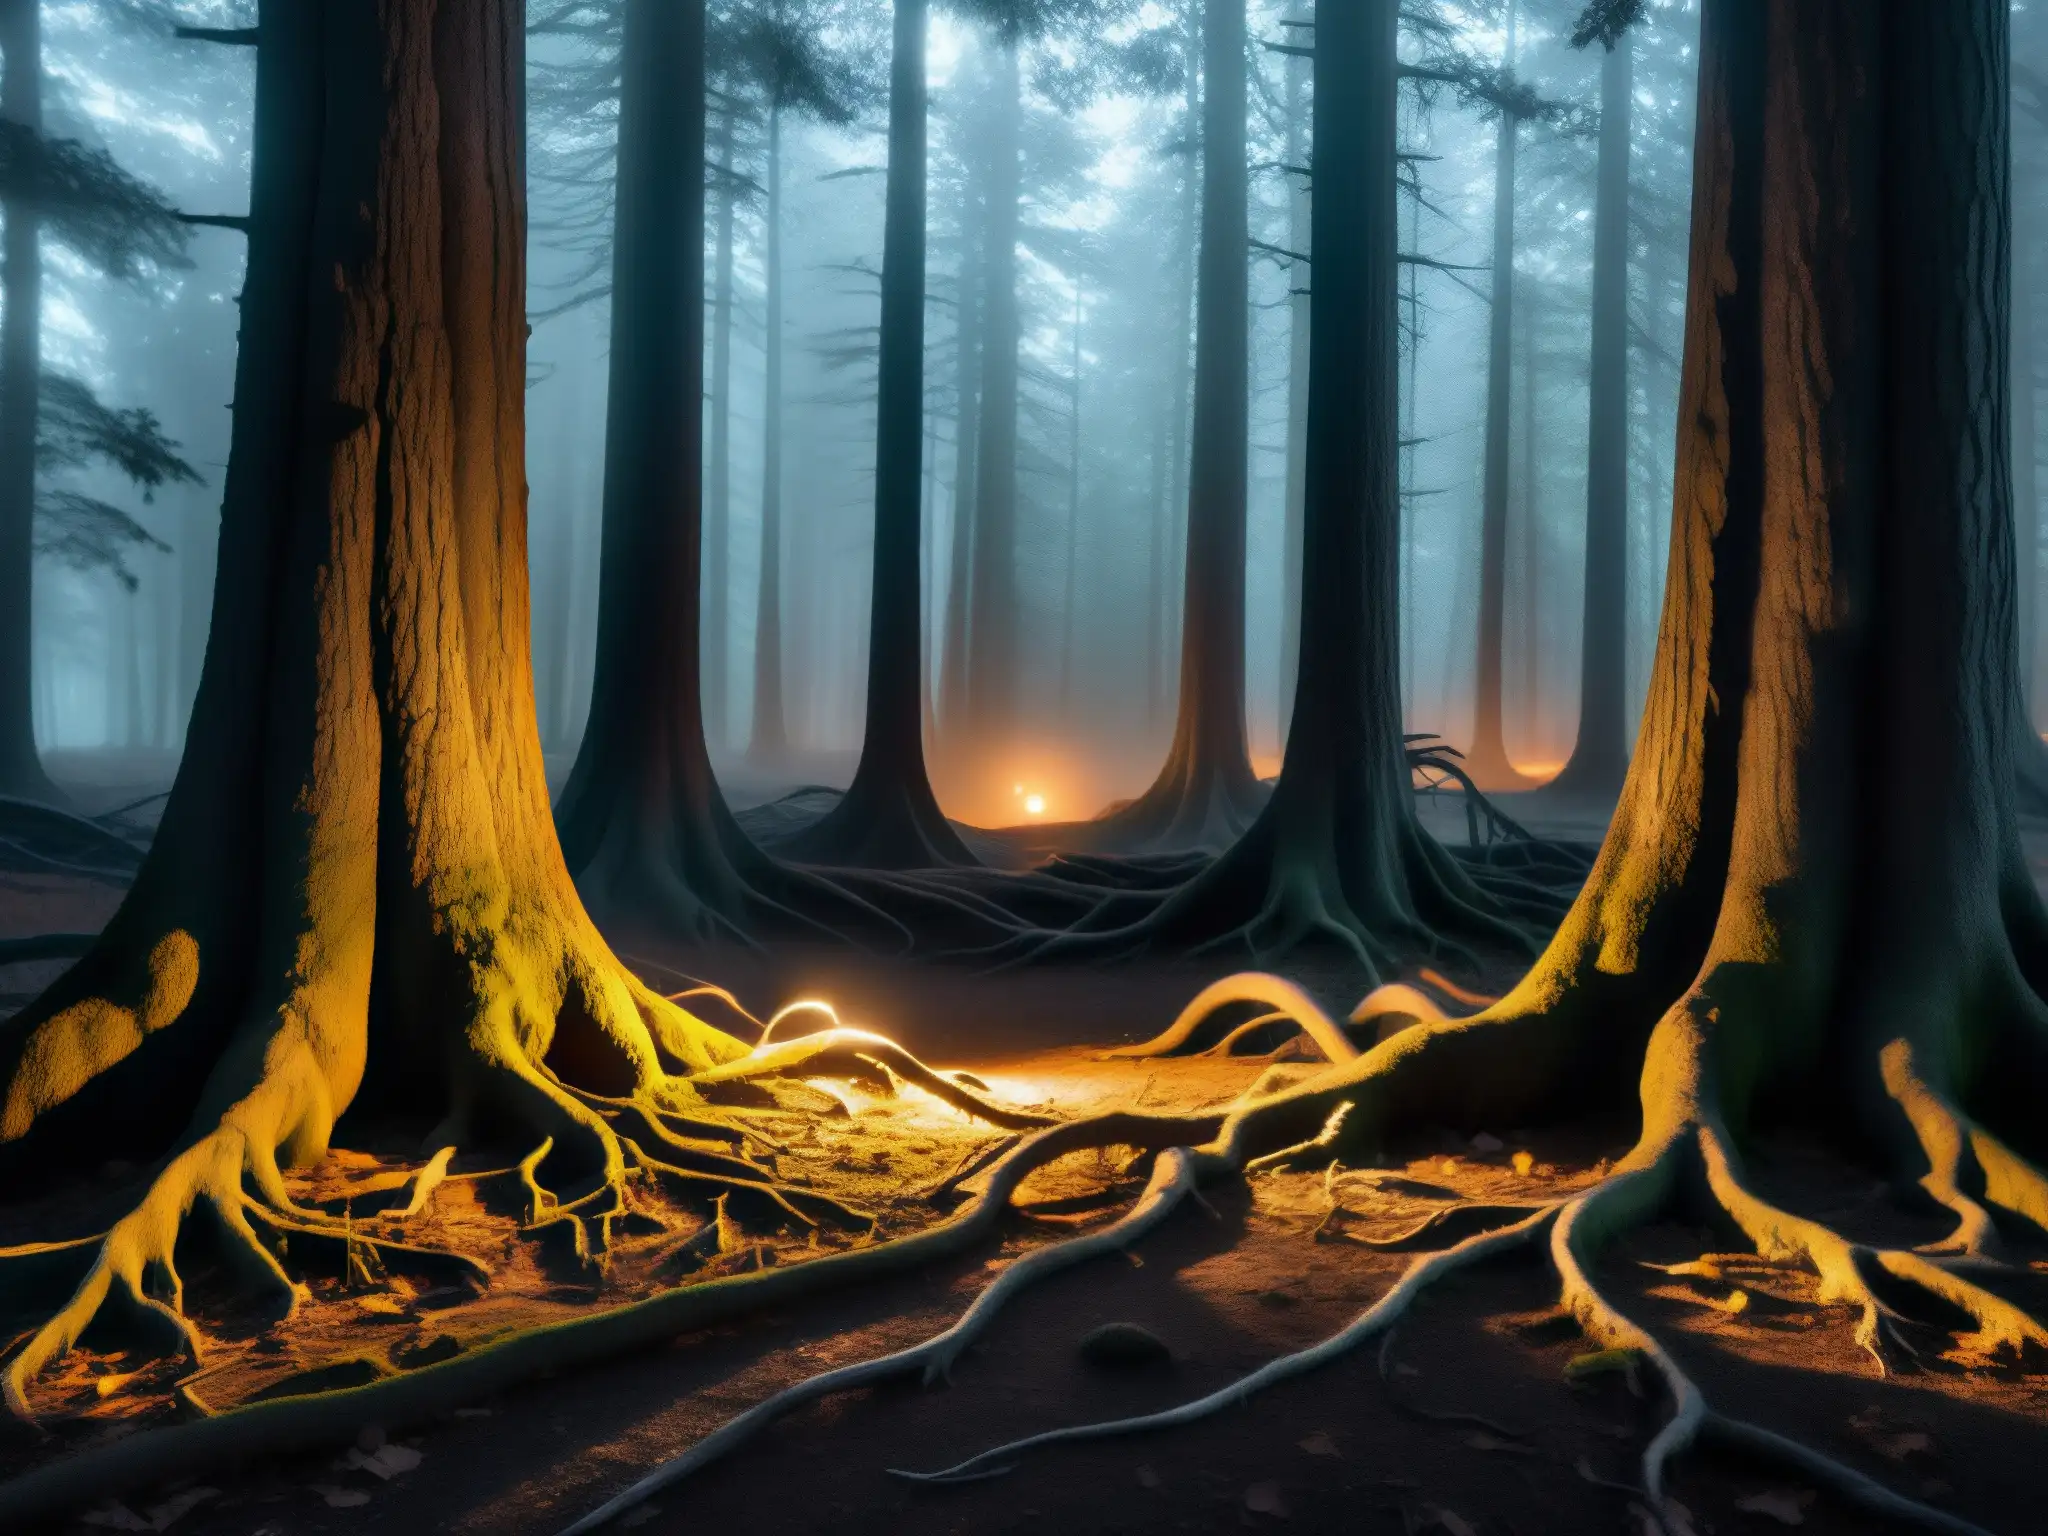 Un bosque oscuro iluminado por la luna, con árboles retorcidos que proyectan sombras misteriosas en el suelo